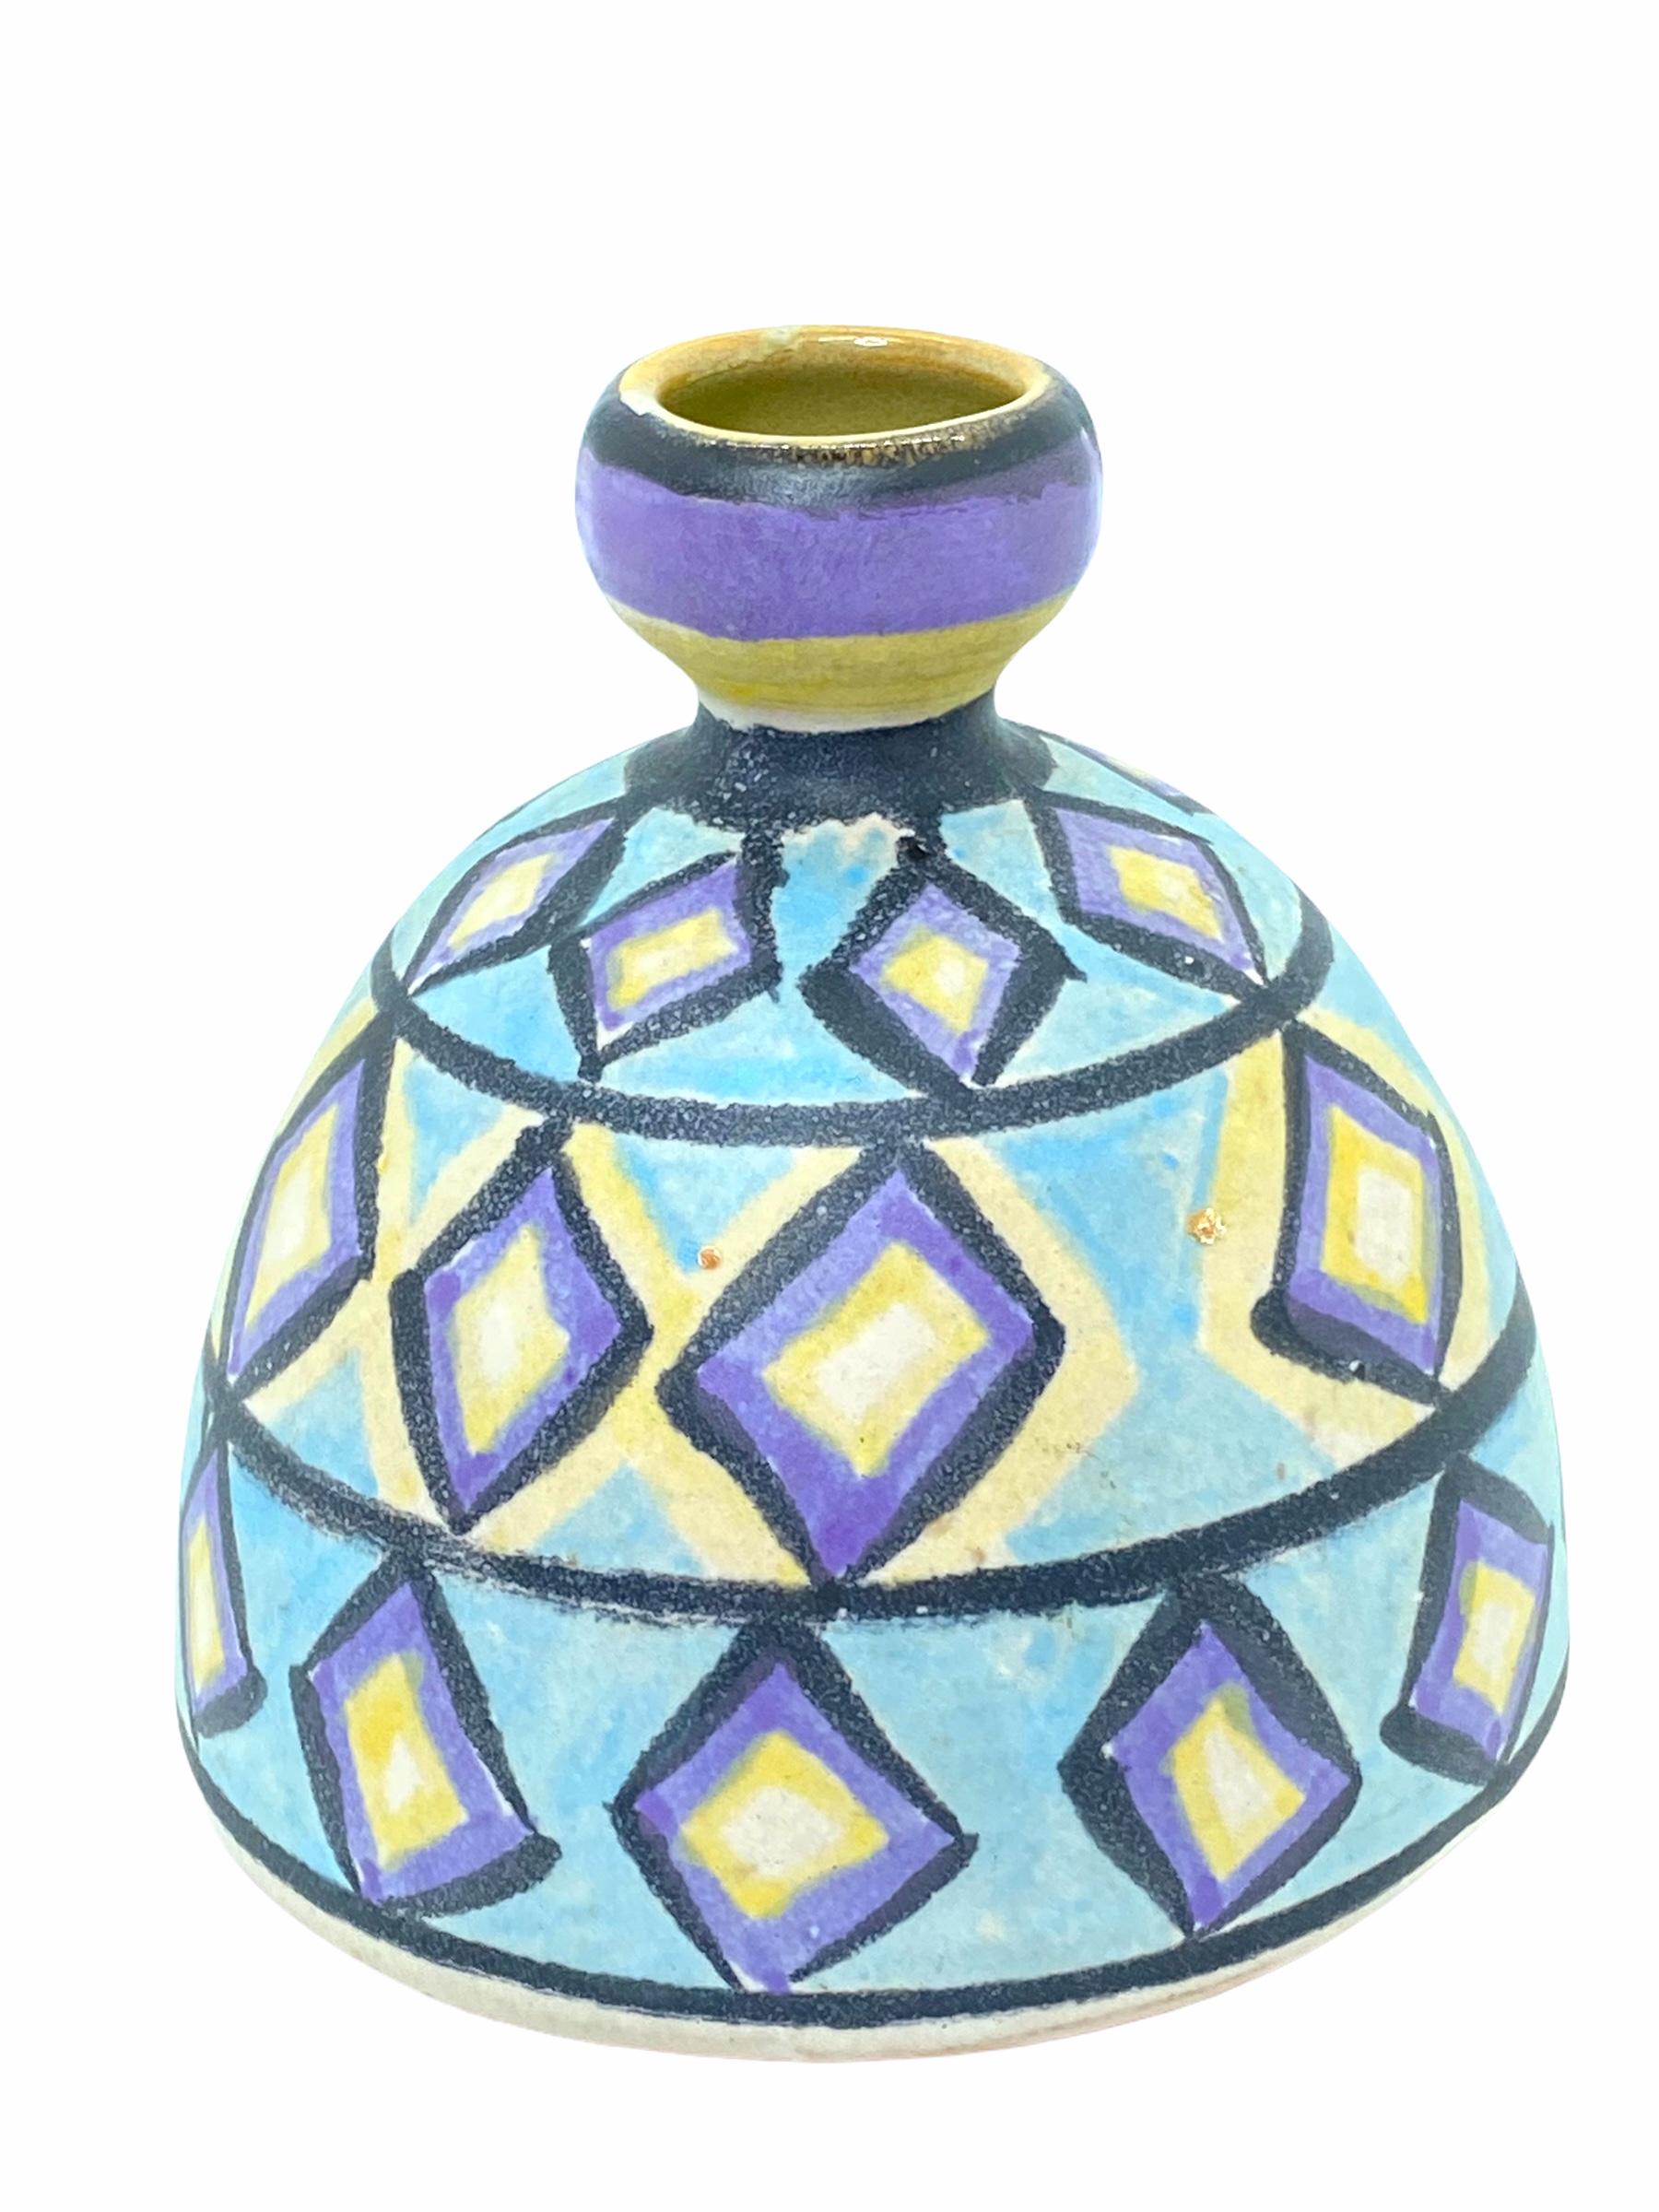 Un étonnant vase en poterie d'art du milieu du siècle dernier, fabriqué à Cologne, en Allemagne, vers les années 1970. Le vase est en très bon état, sans éclats, ni fissures, ni morsures de puces. Signé avec une étiquette de studio à la base. Le